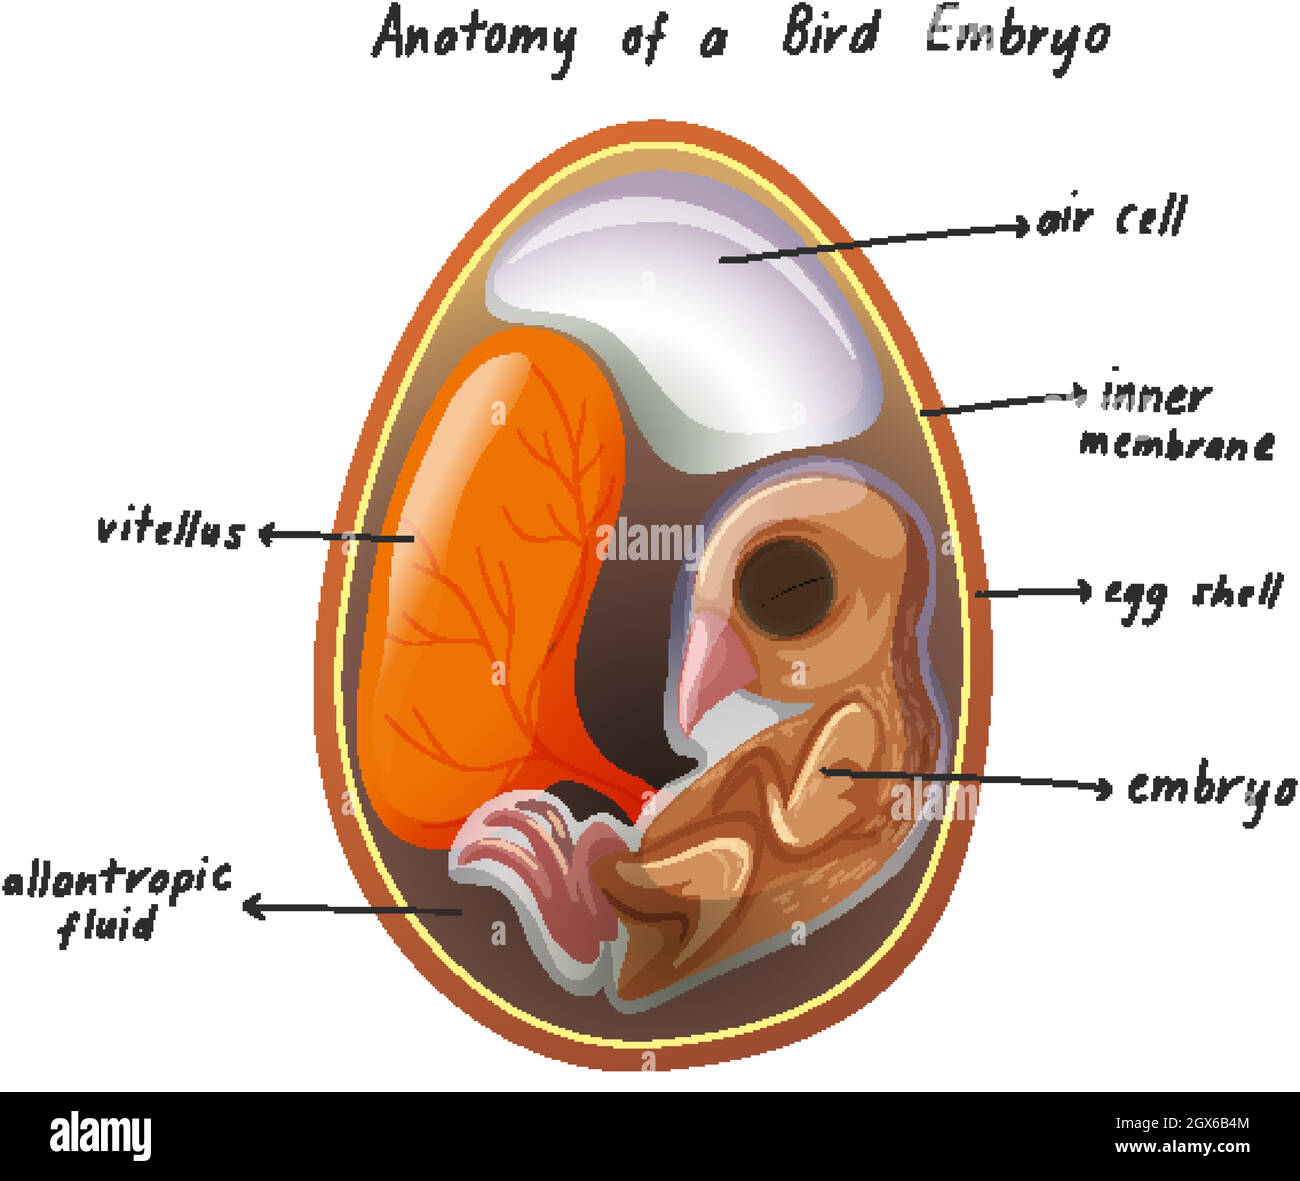 Anatomy of a Bird Embryo Stock Vector